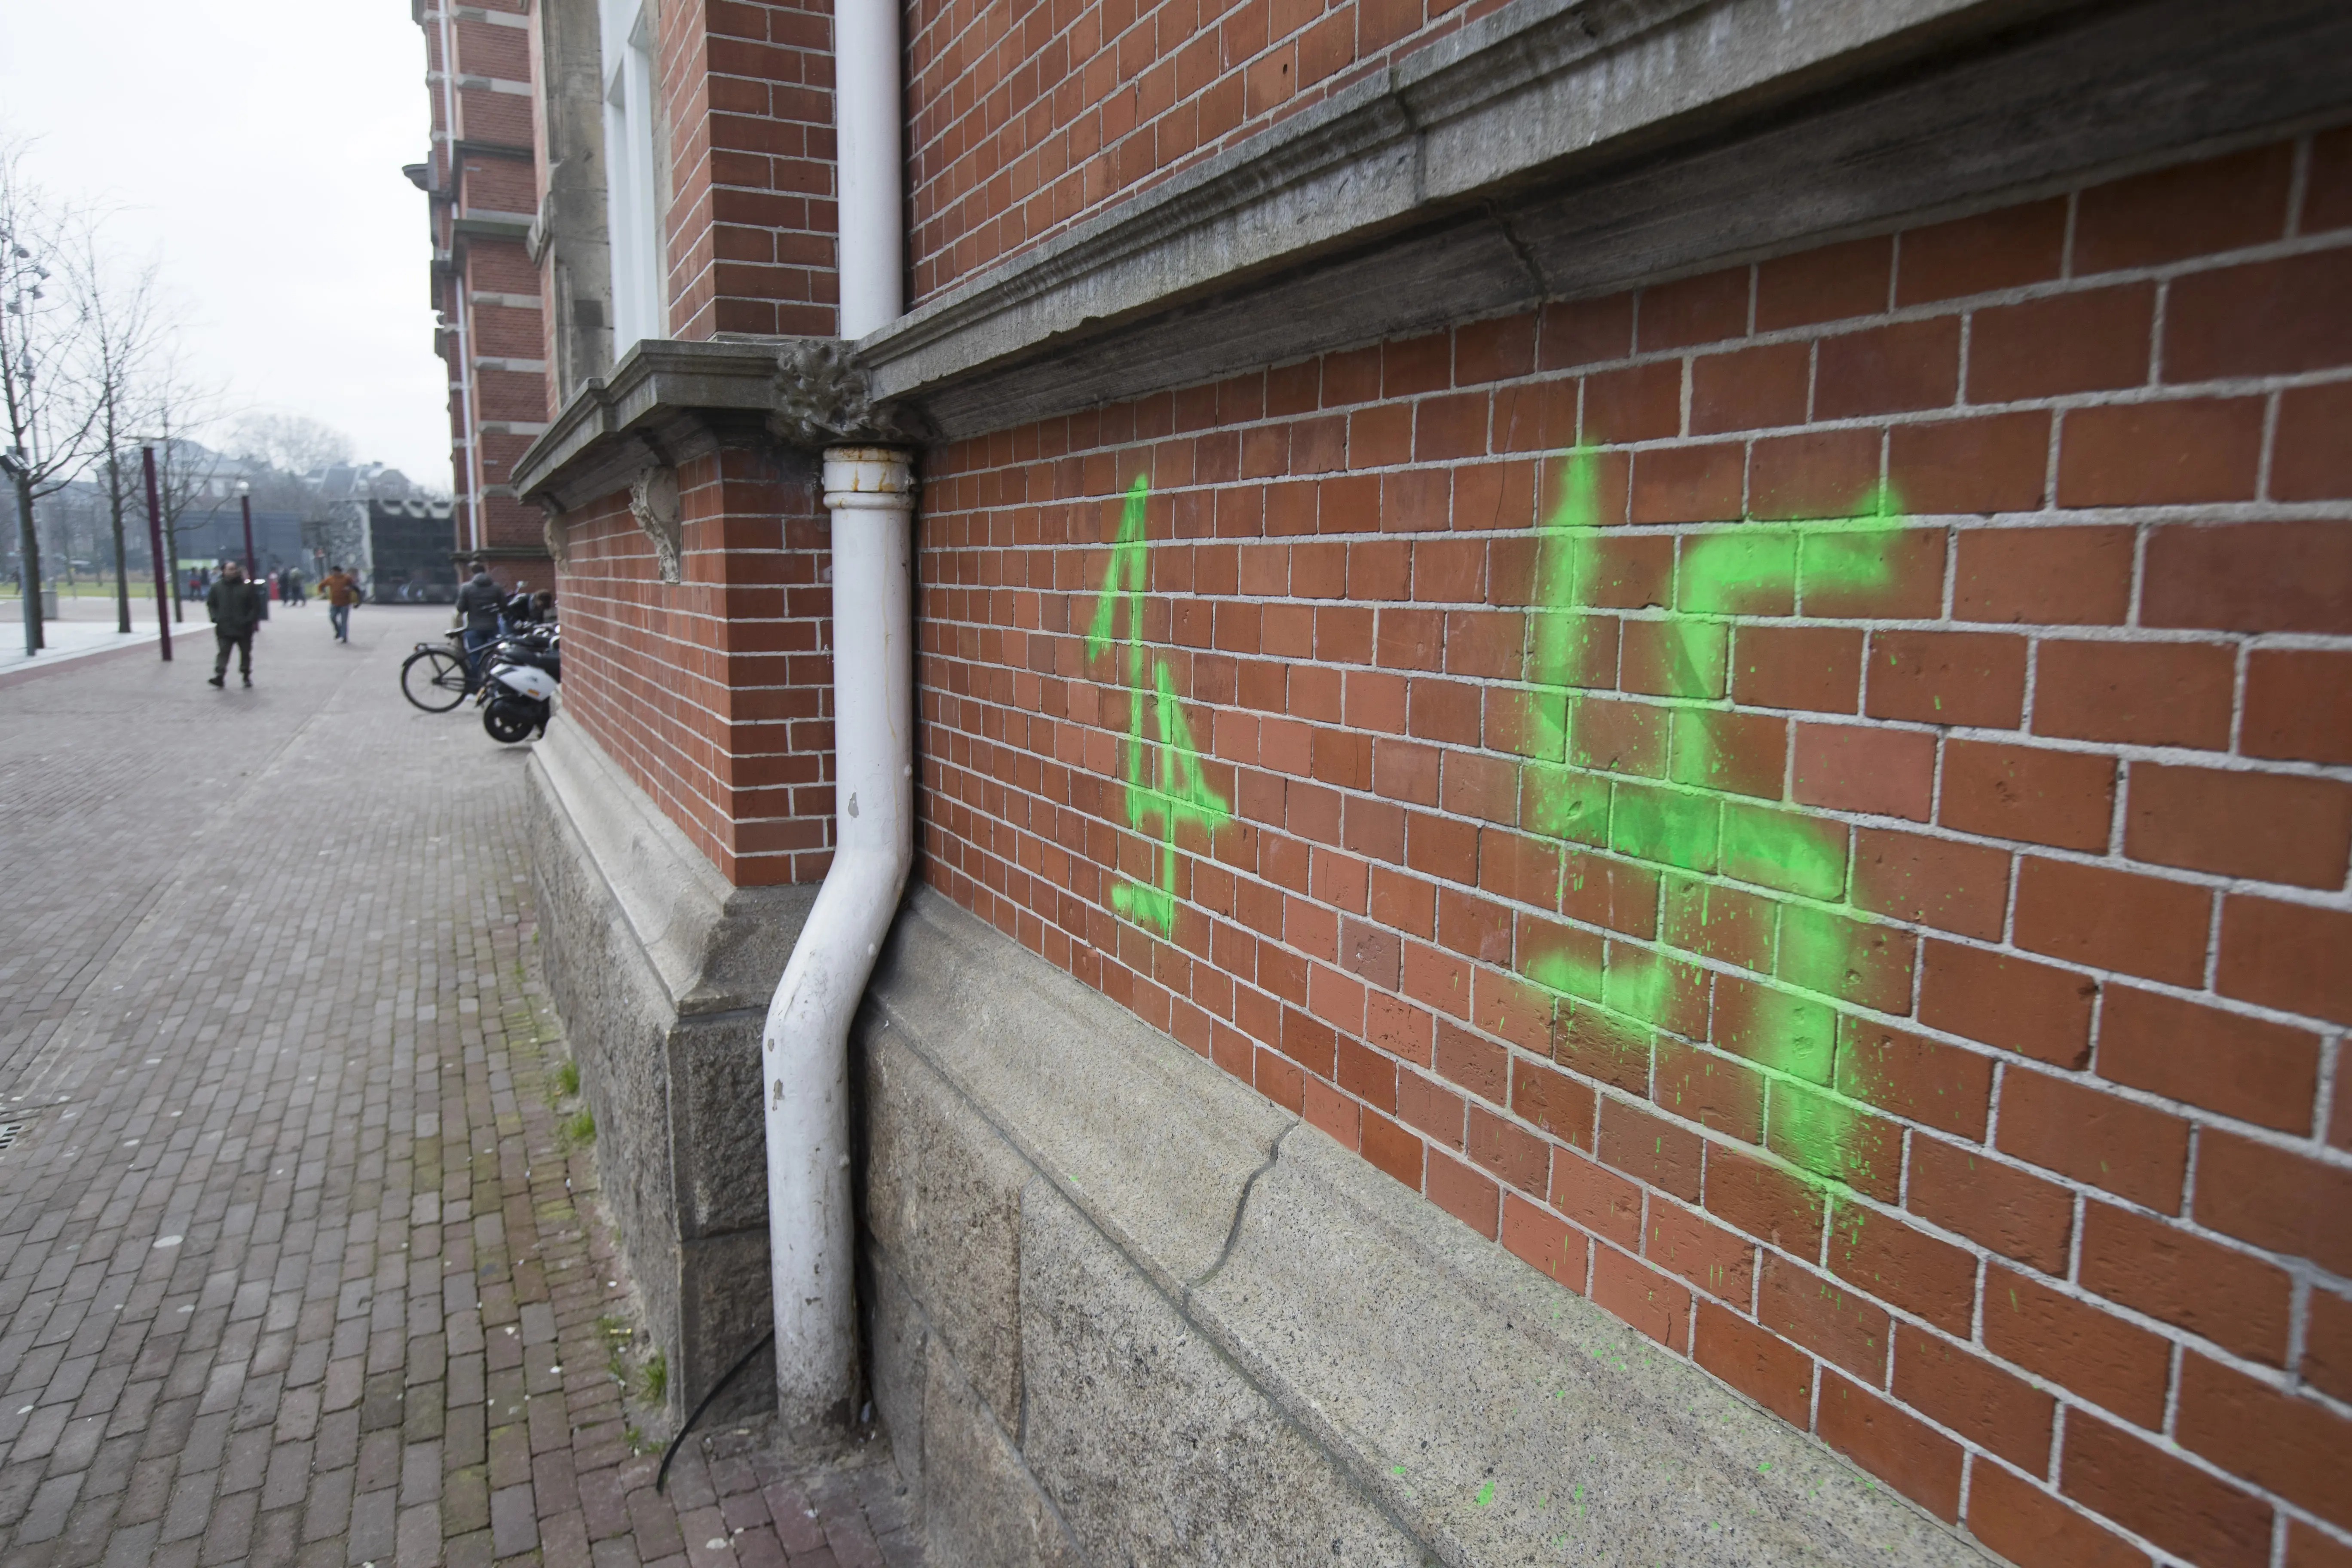 כתובות נאצה על מבנה באמסטרדם לקראת משחקי כדורגל בין האג לבין אייאקס